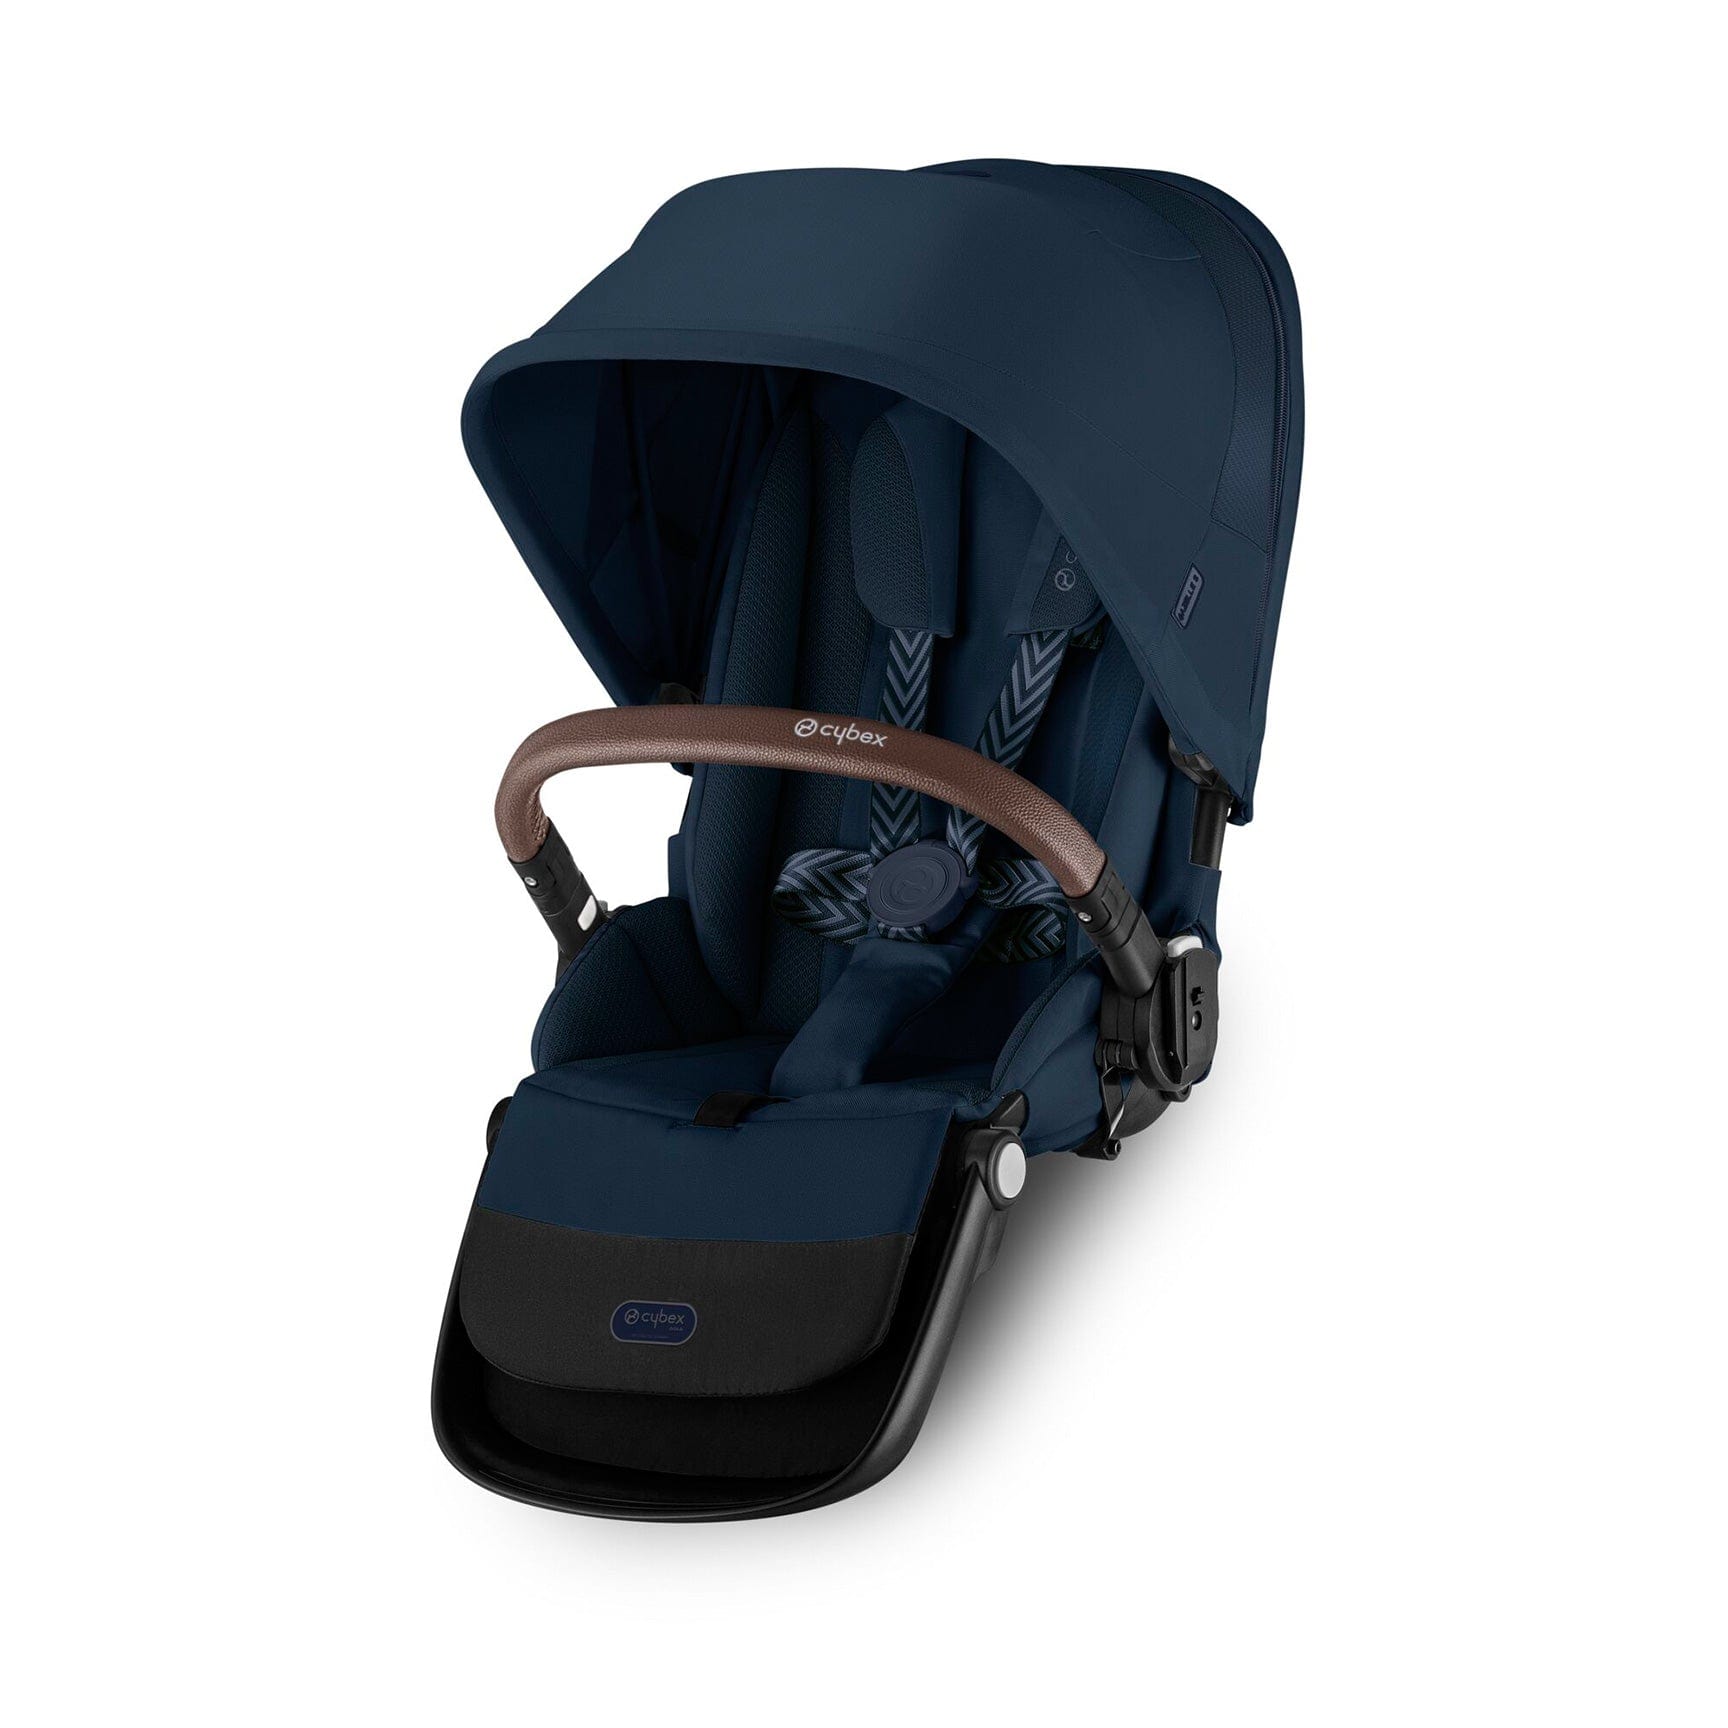 Cybex Gazelle S Seat Unit in Ocean Blue Baby Prams 522002767 4063846324958